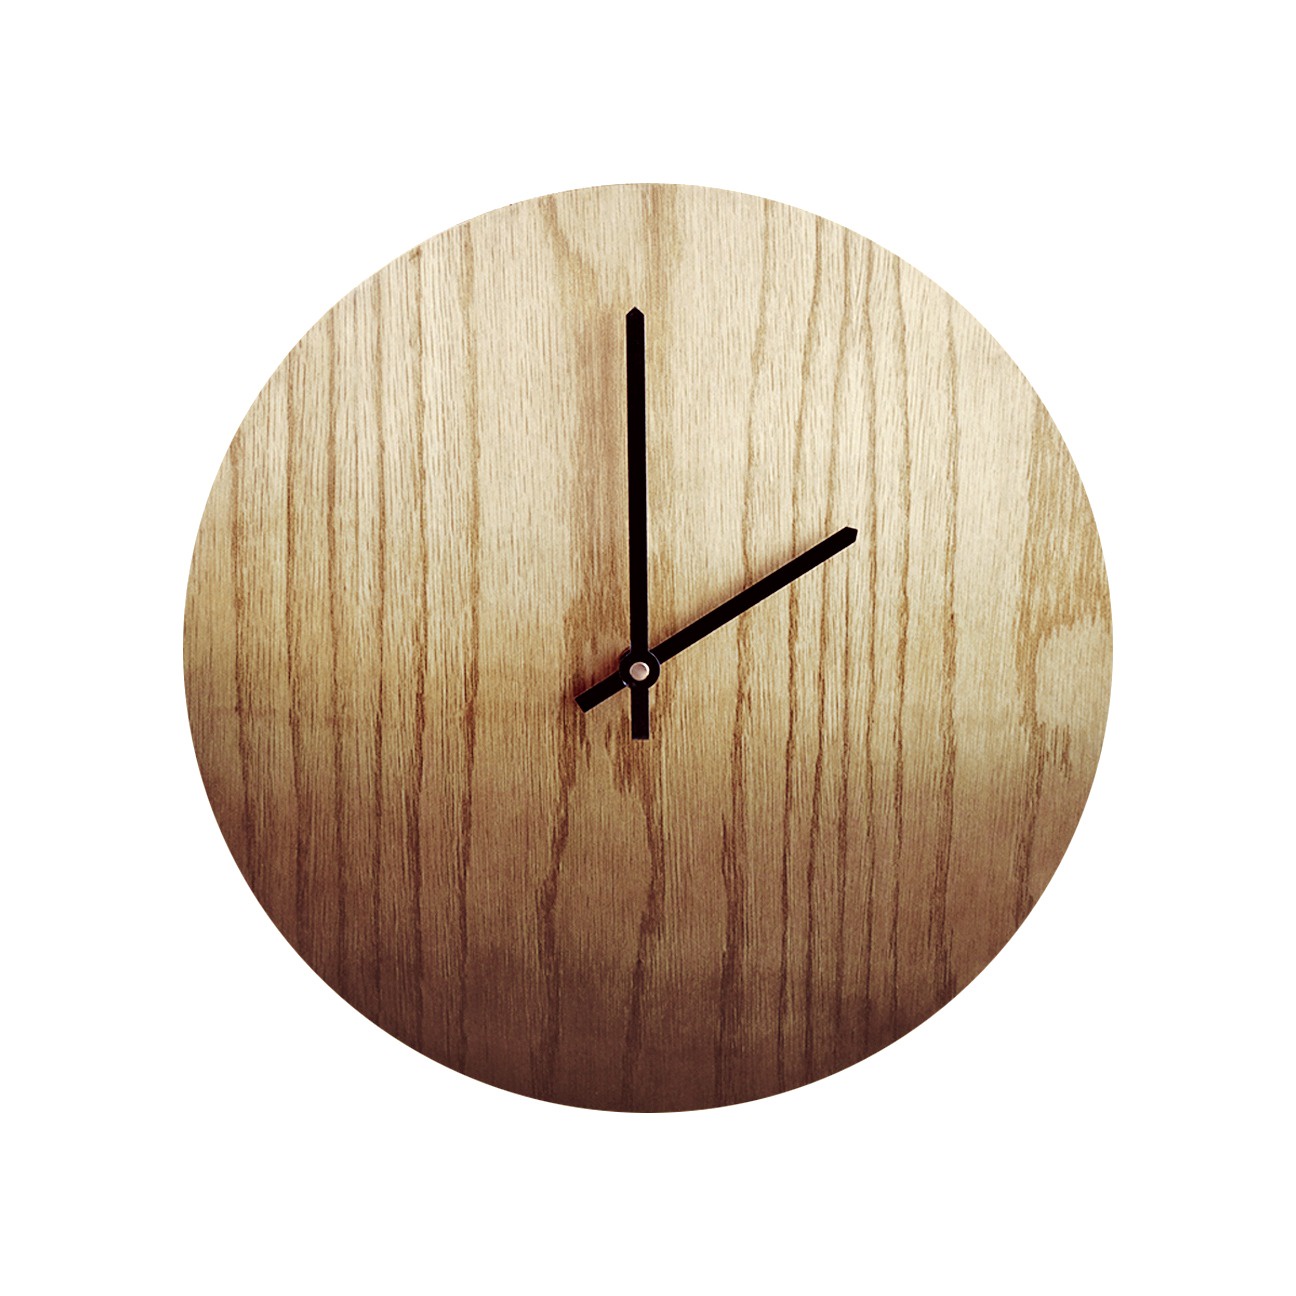 Настенные часы Roomton дизайнерские часы из дерева с ручной росписью, коричневый